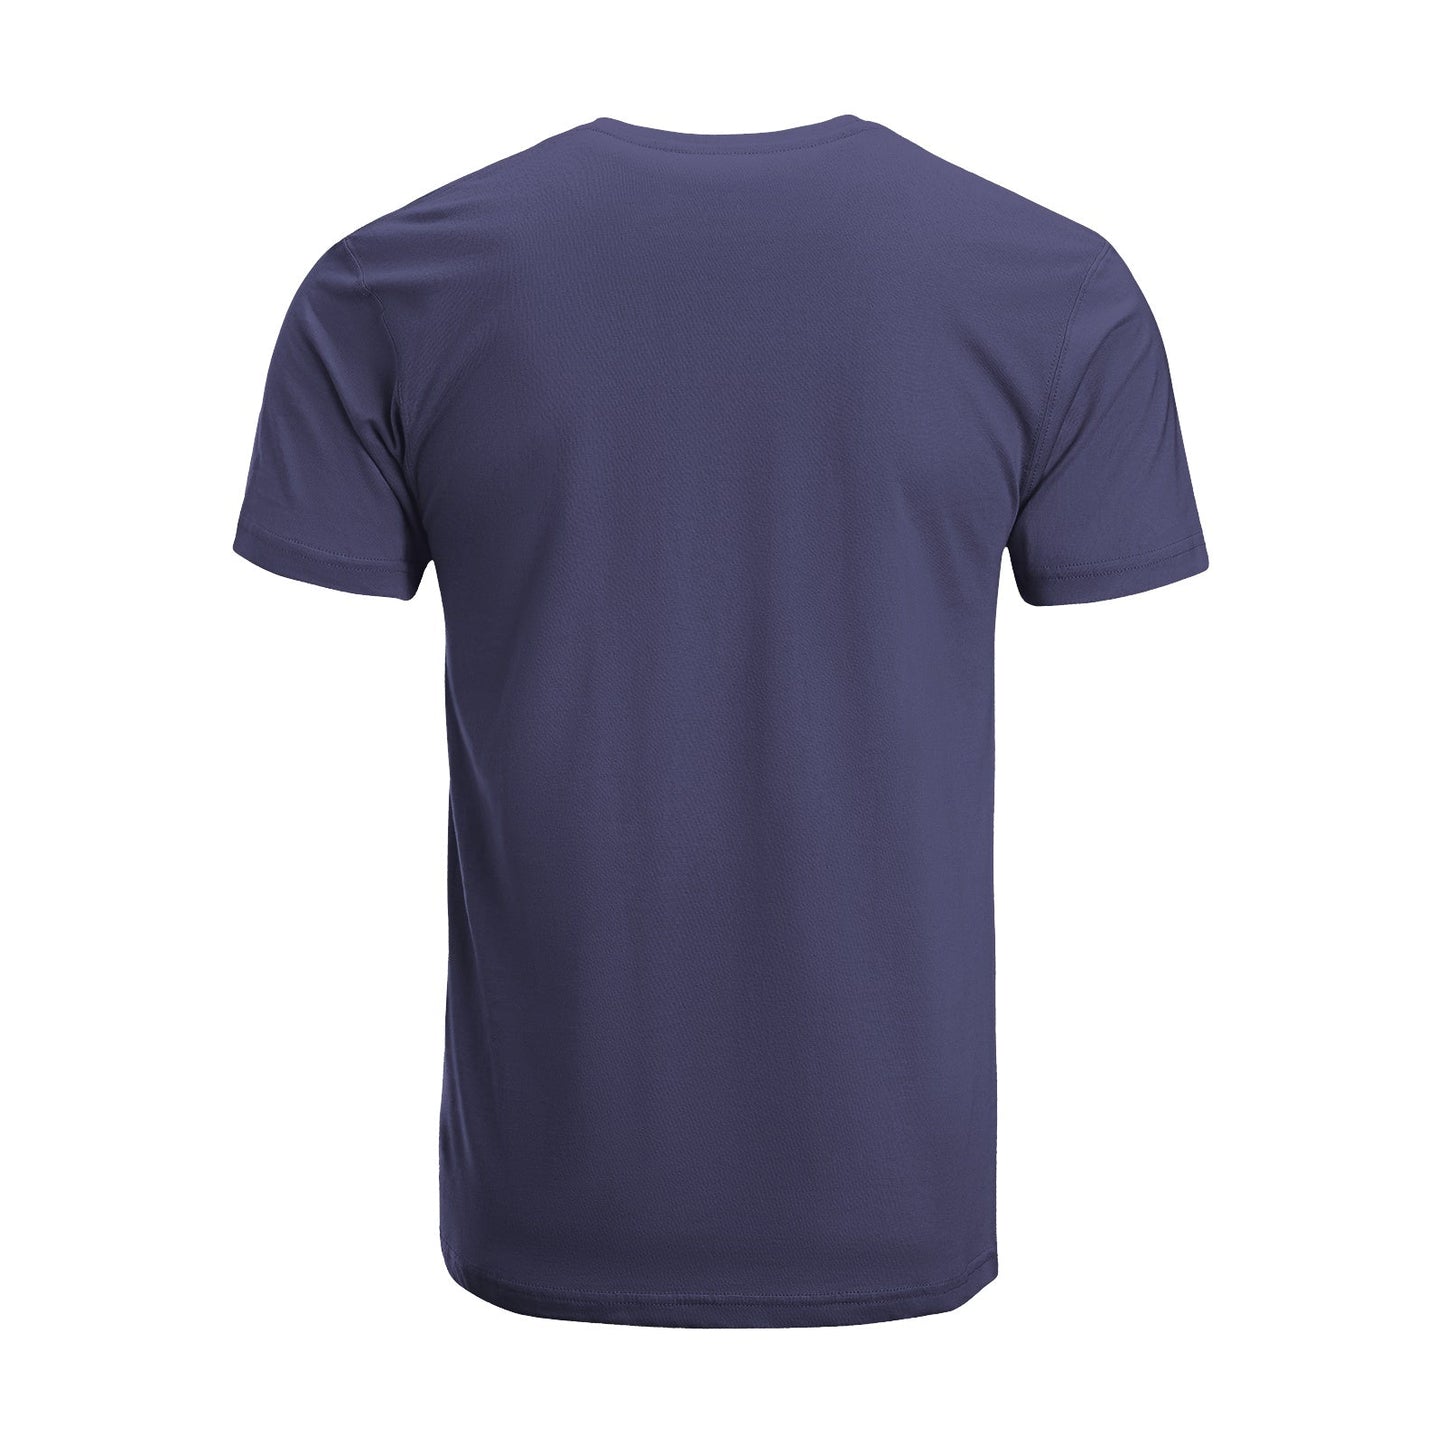 Unisex Short Sleeve Crew Neck Cotton Jersey T-Shirt TRUCK 44